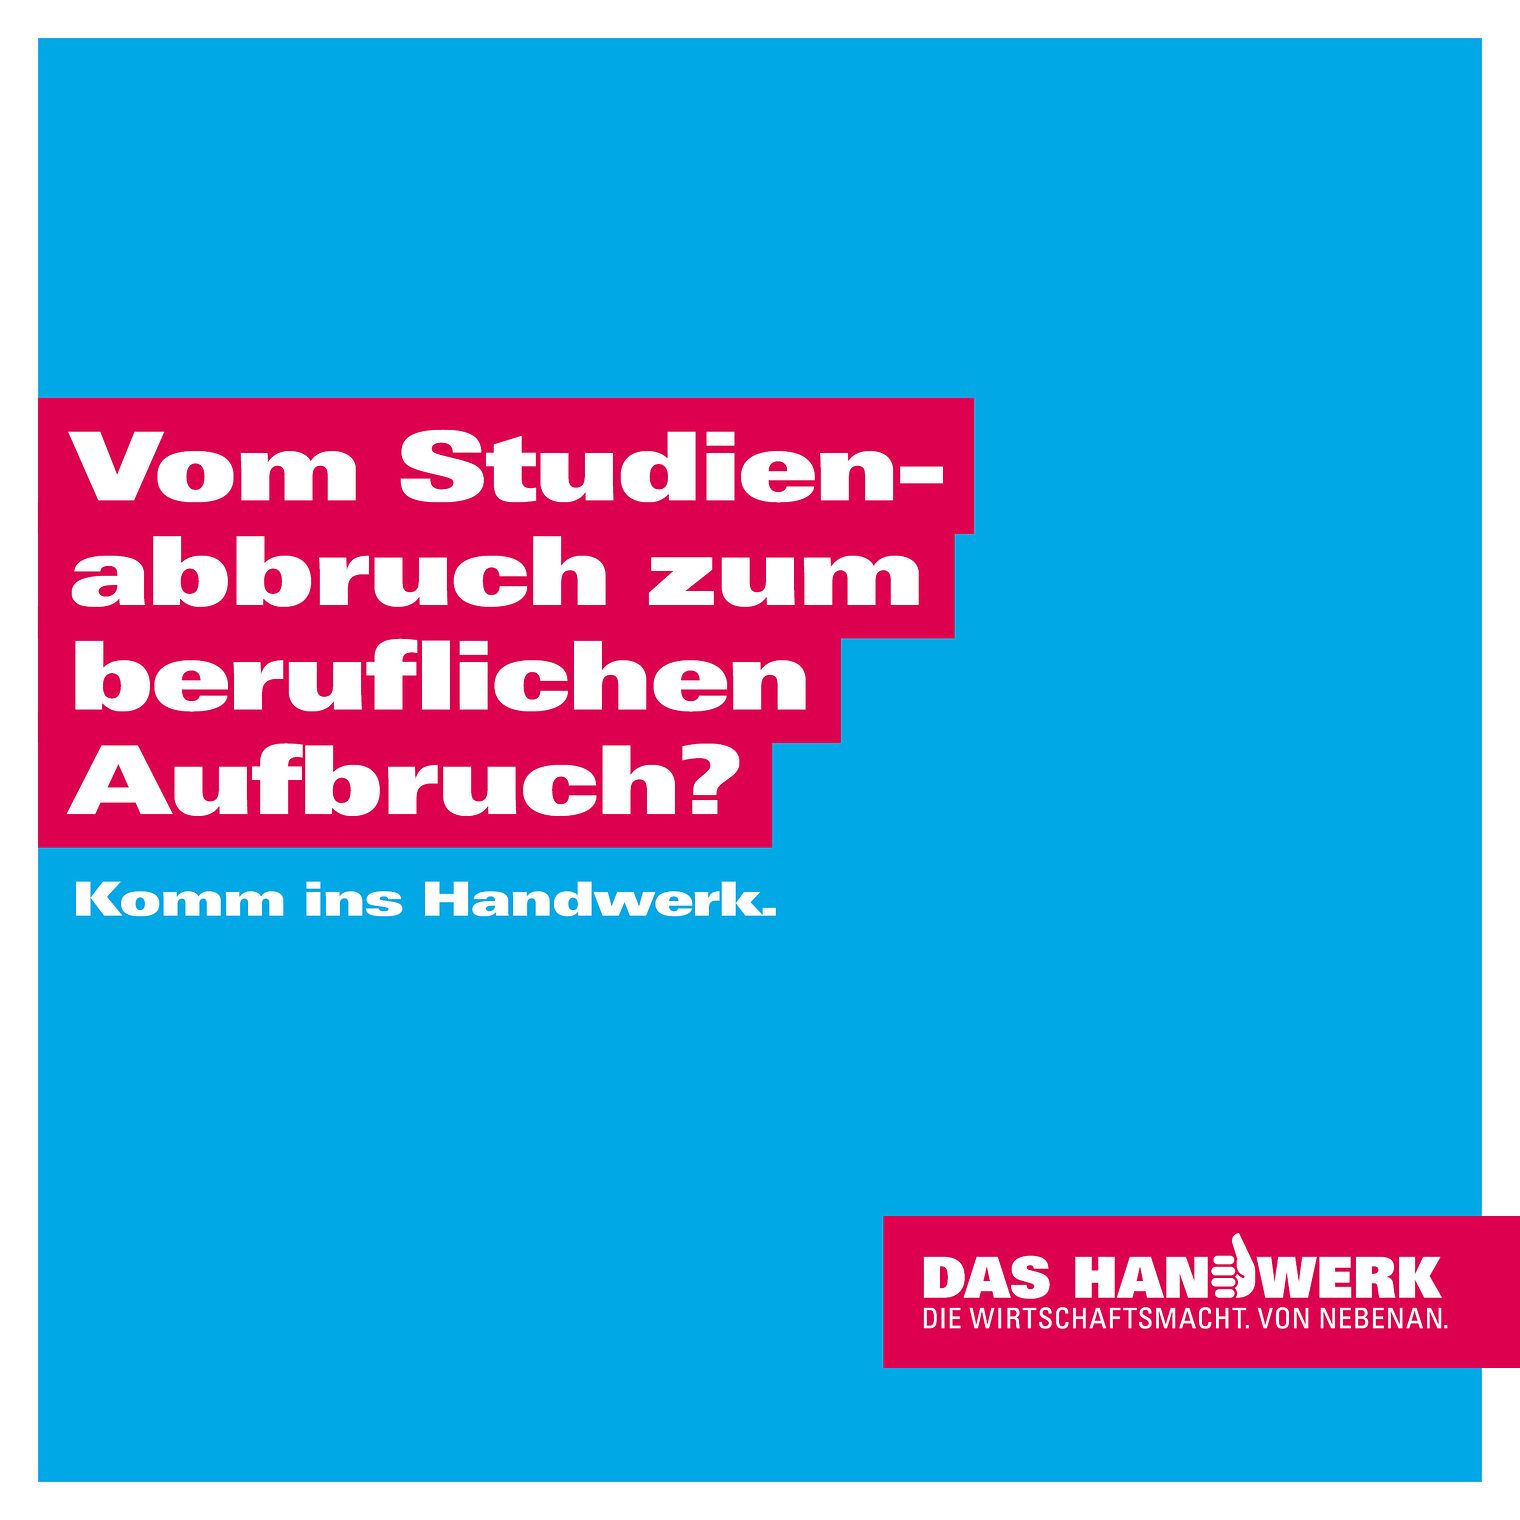 Imagekampagne des Handwerks | Spruch Studienabbruch